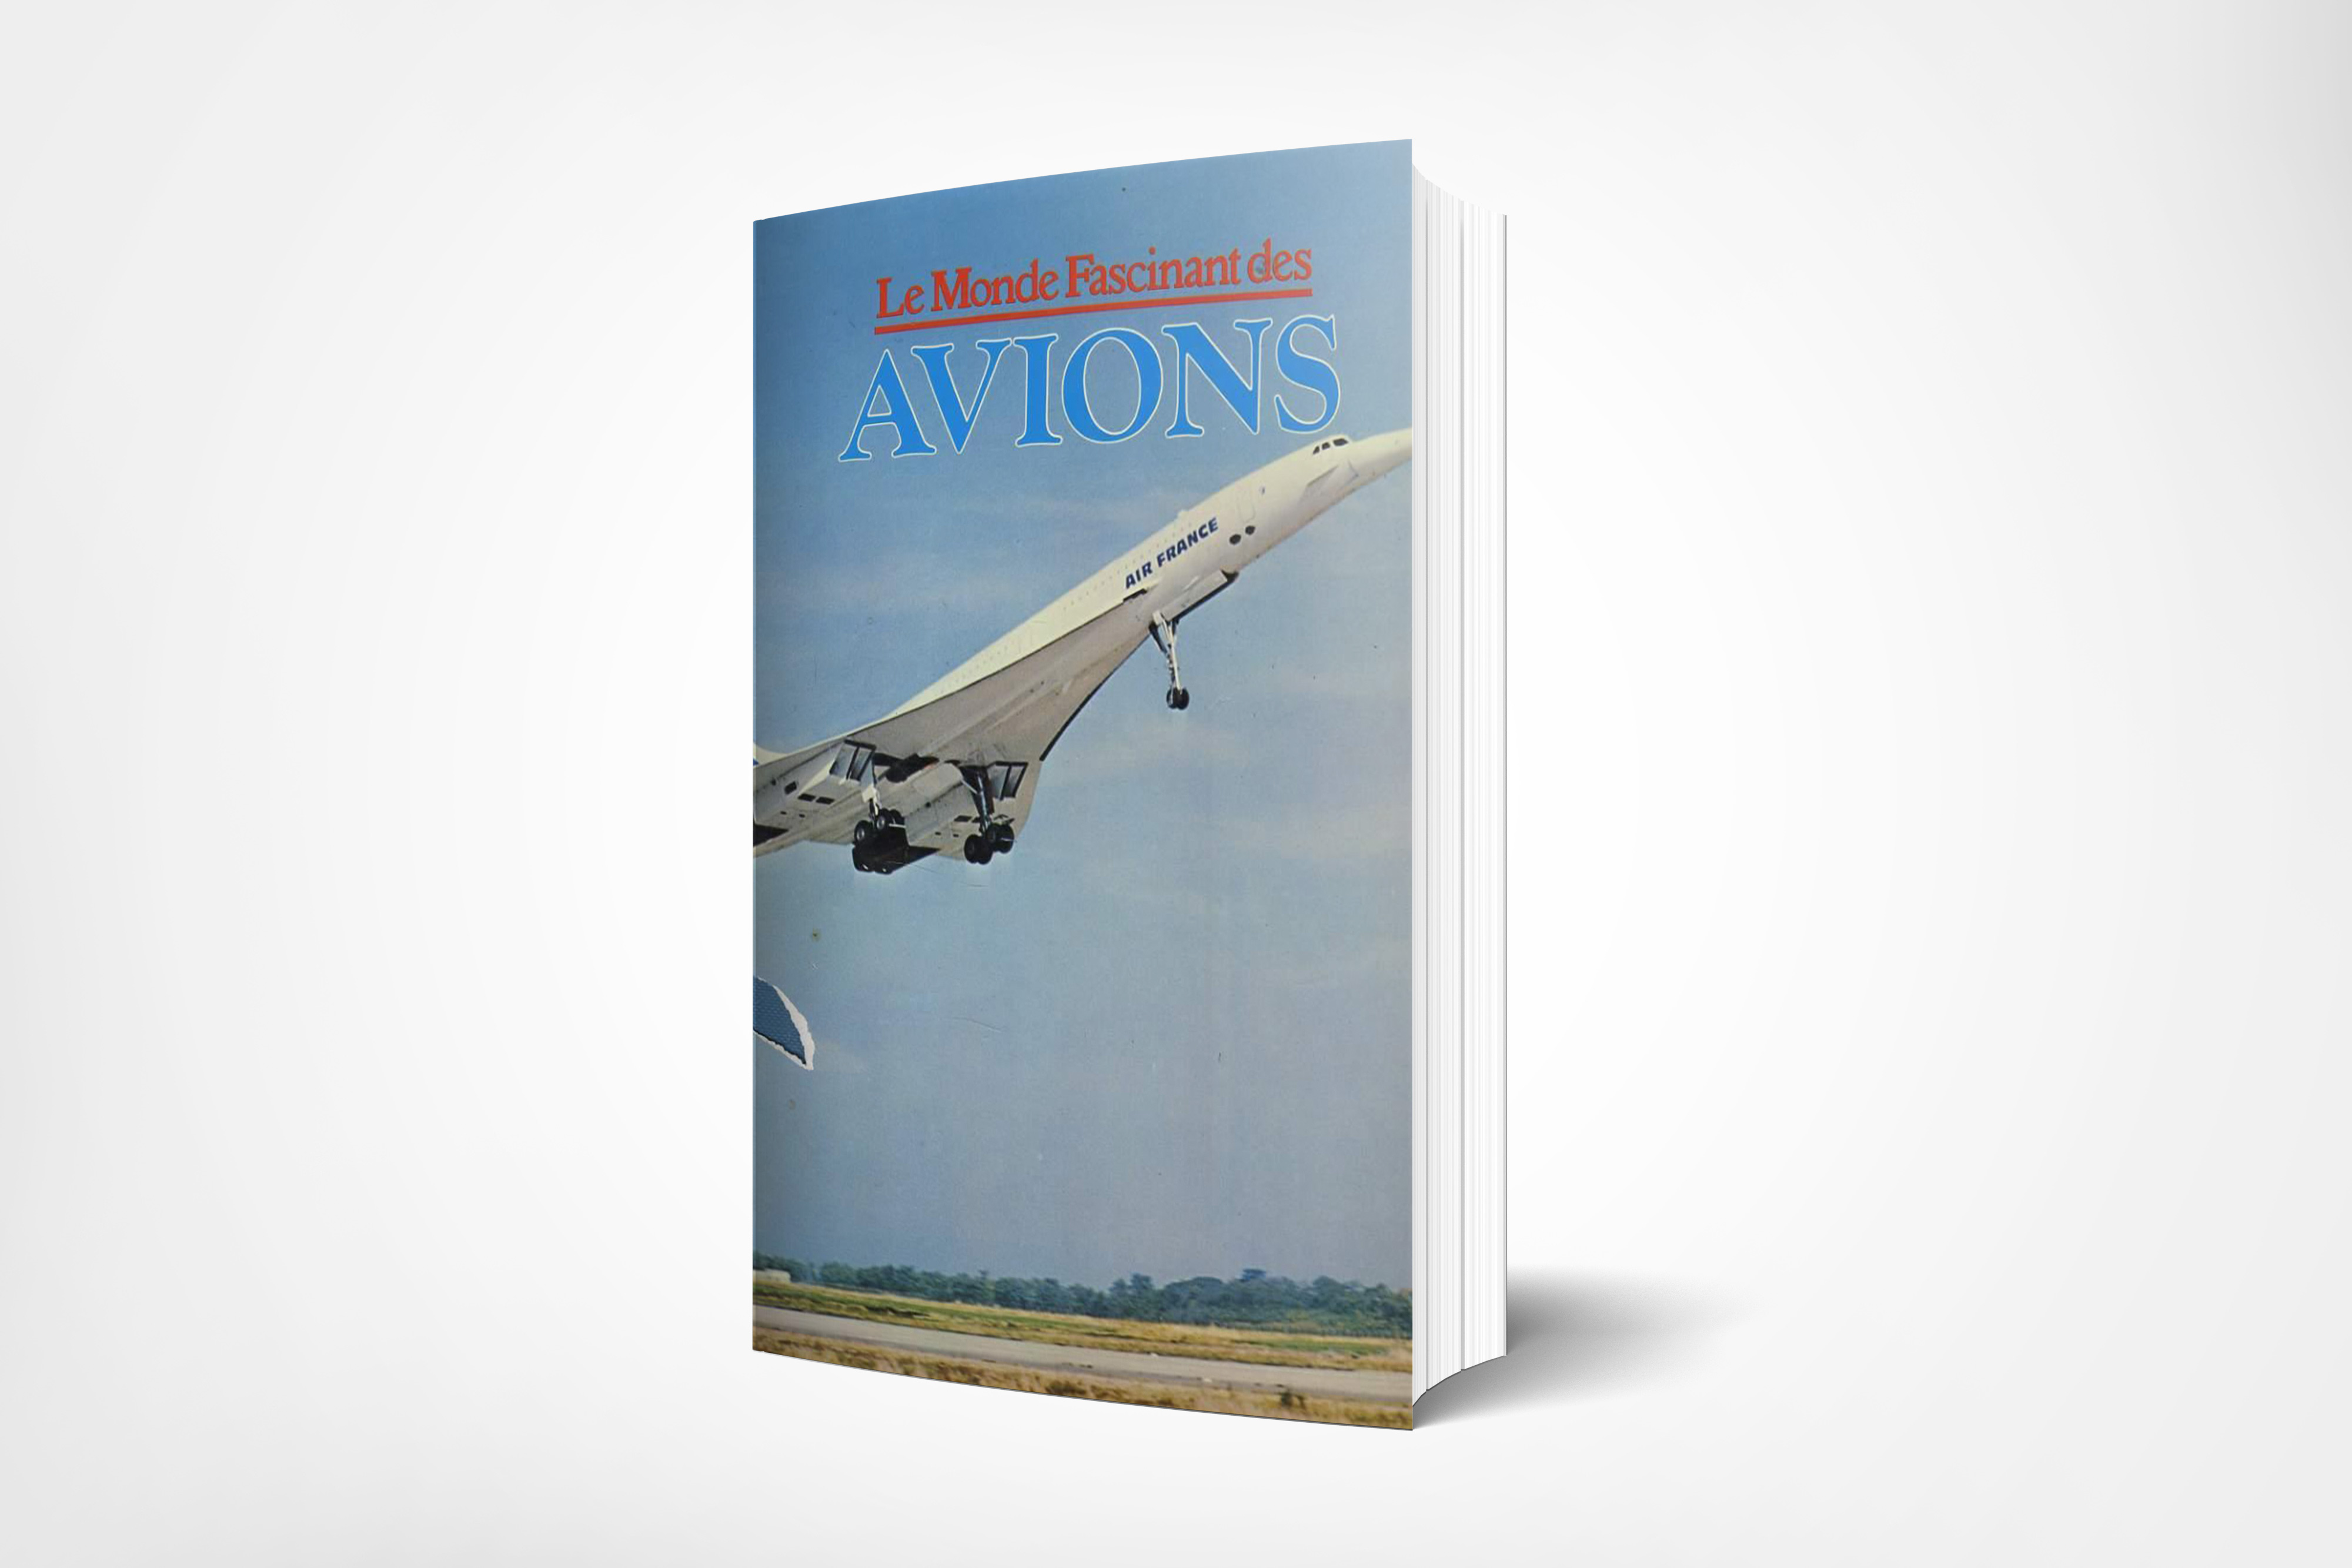 Le Monde Fascinant des Avions (Askeri Ve Sivil Havacılık) [Le Monde Fascinant des Avions (Military and Civil Aviation)]